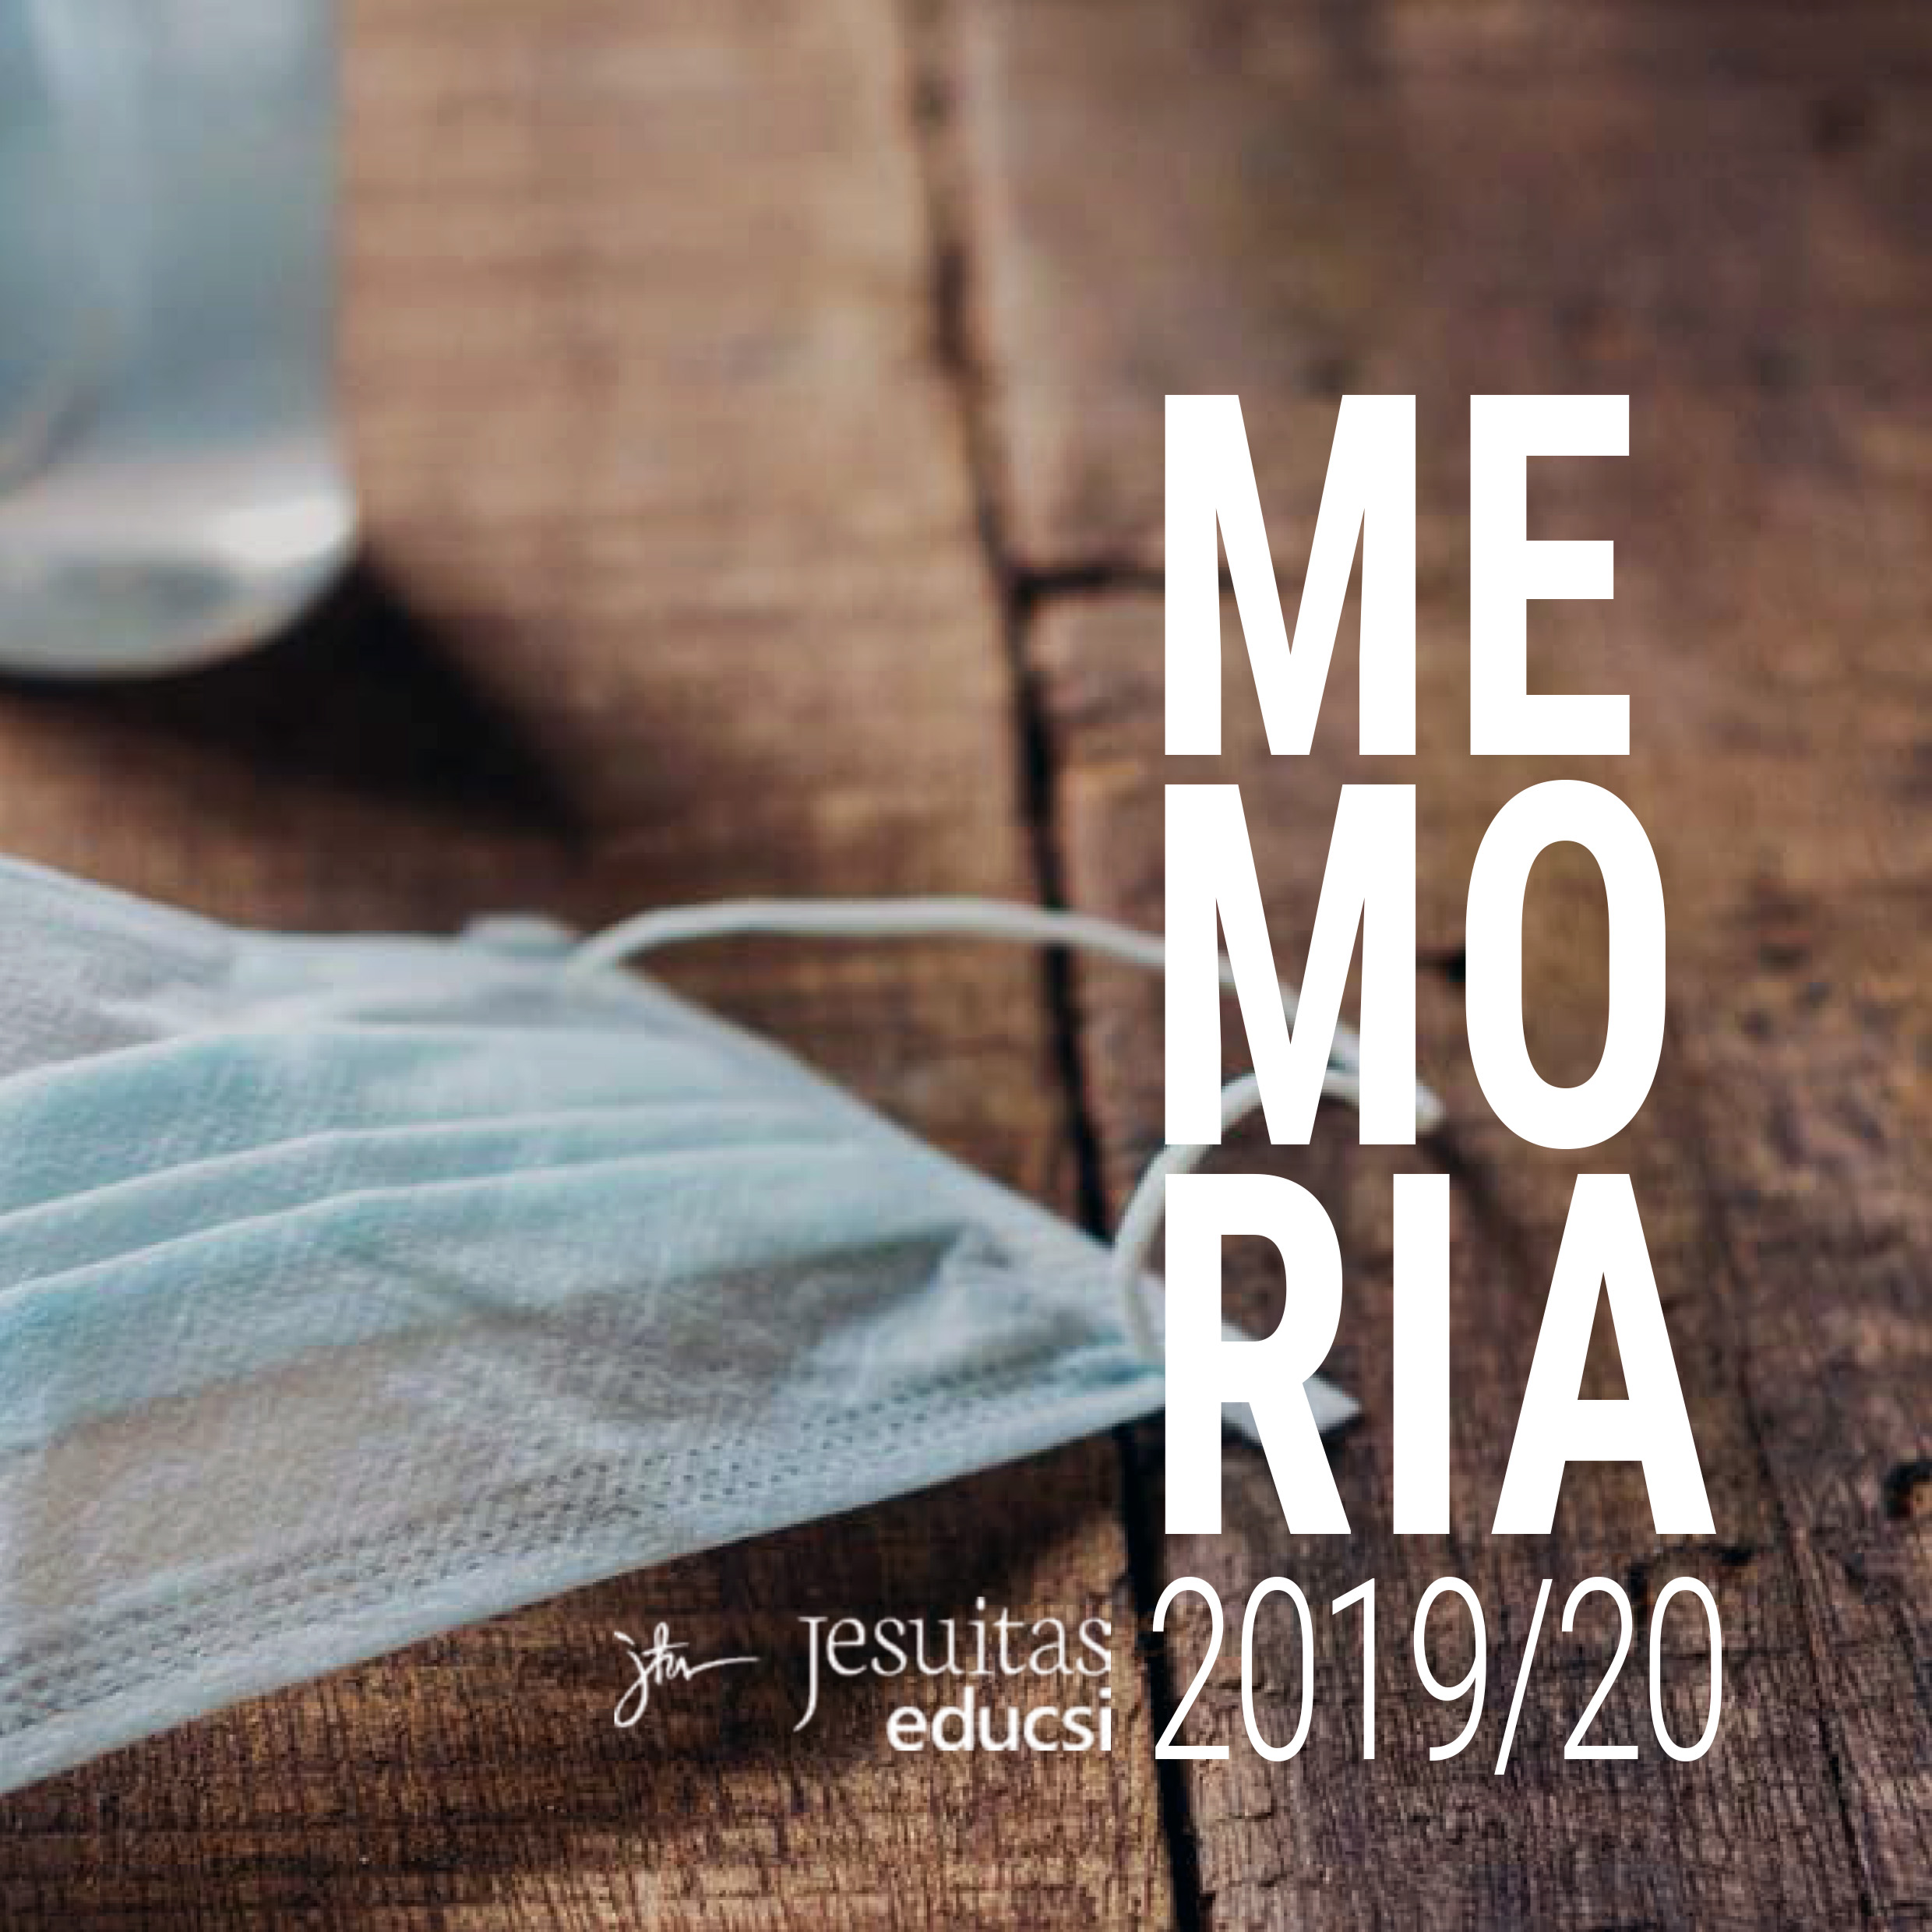 Memoria de Educsi 2019-2020